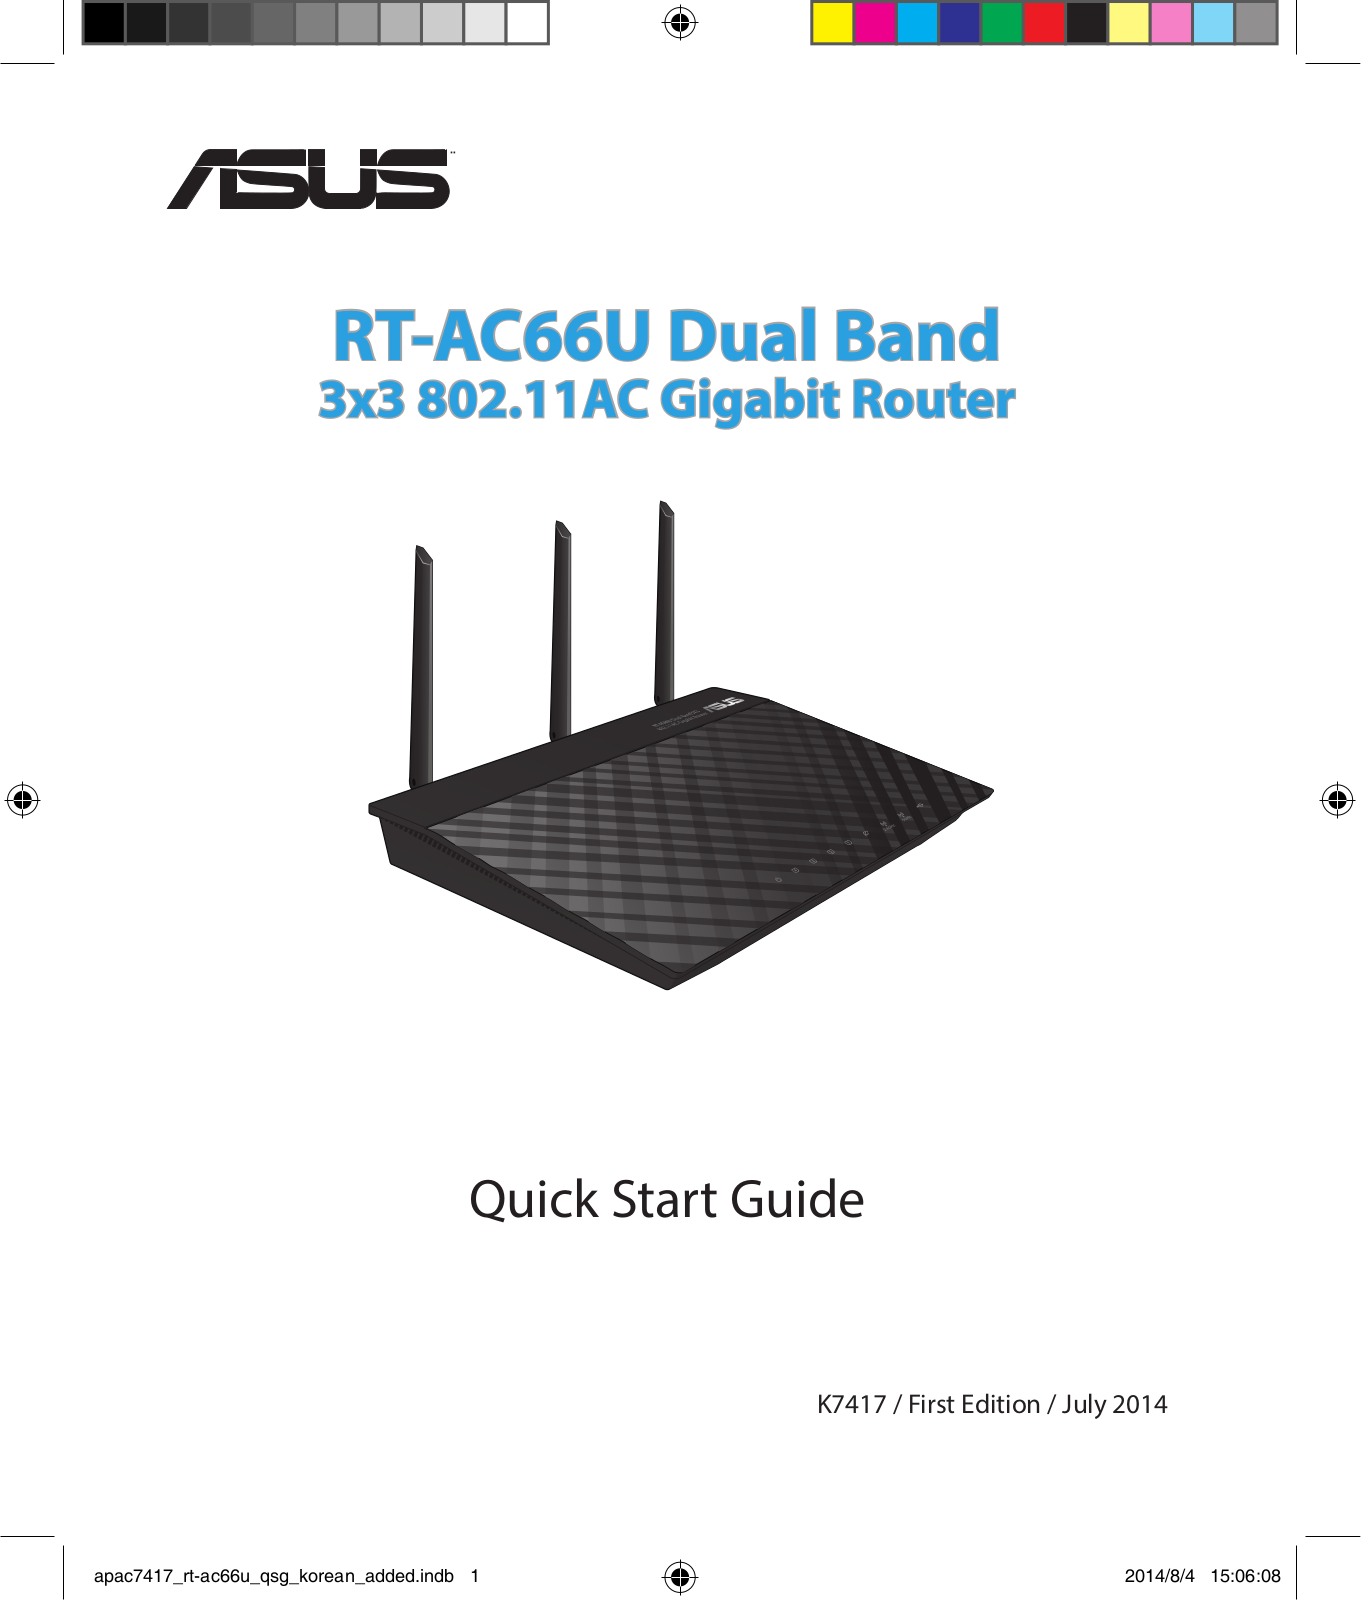 ASUS RT-AC66U, APAC7417 User Manual